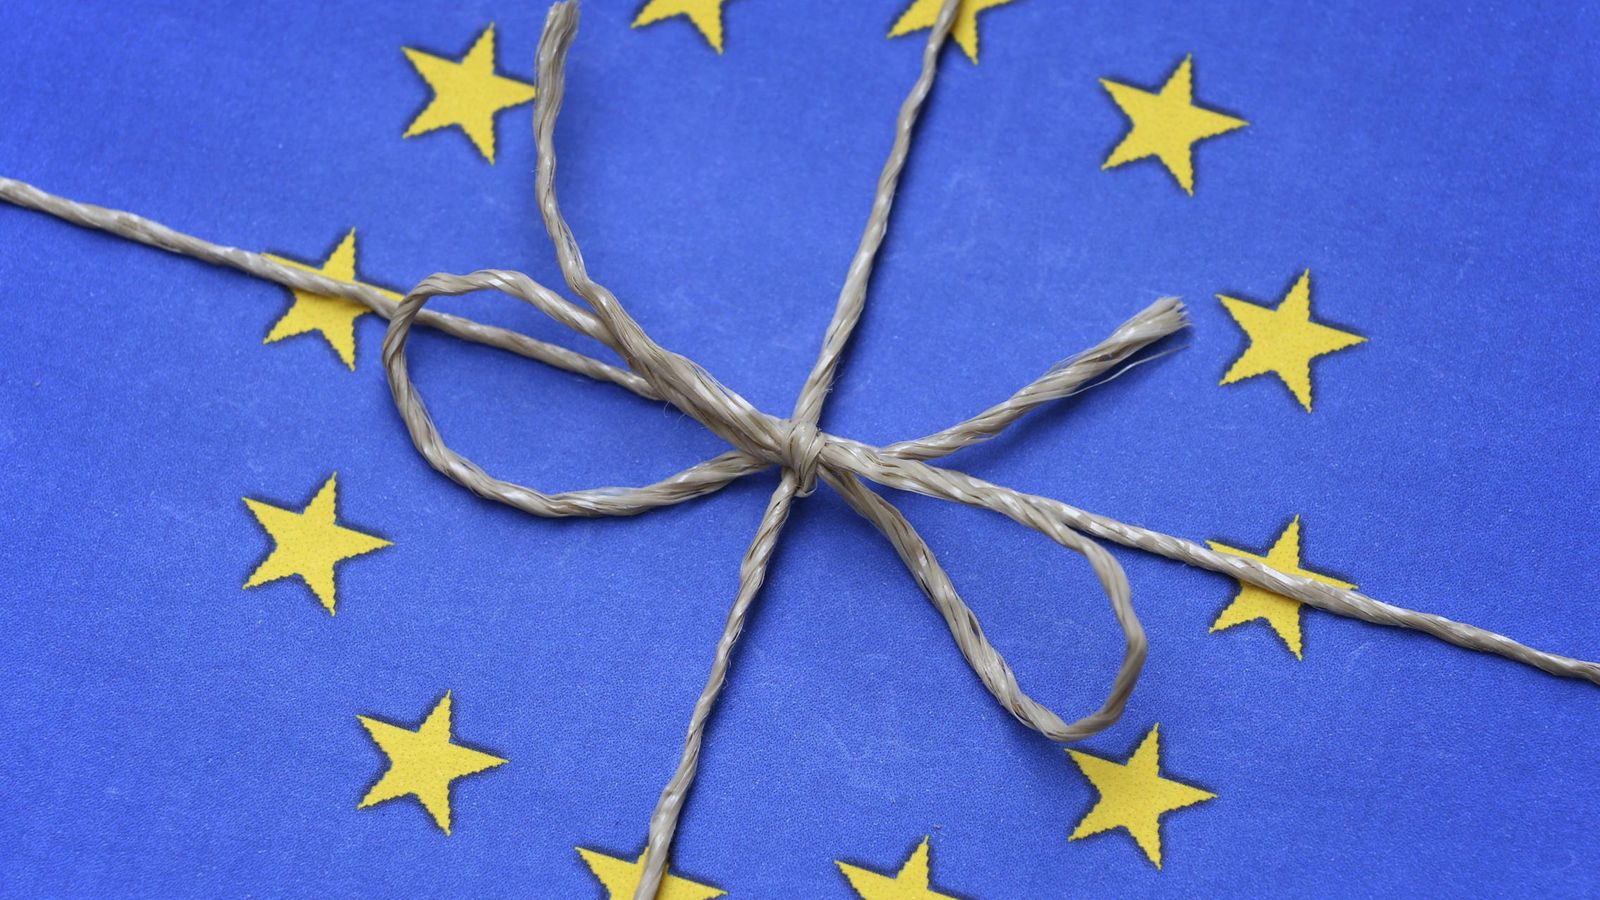 Foto: Vista de la bandera de la Unión Europea atada con una cuerda.